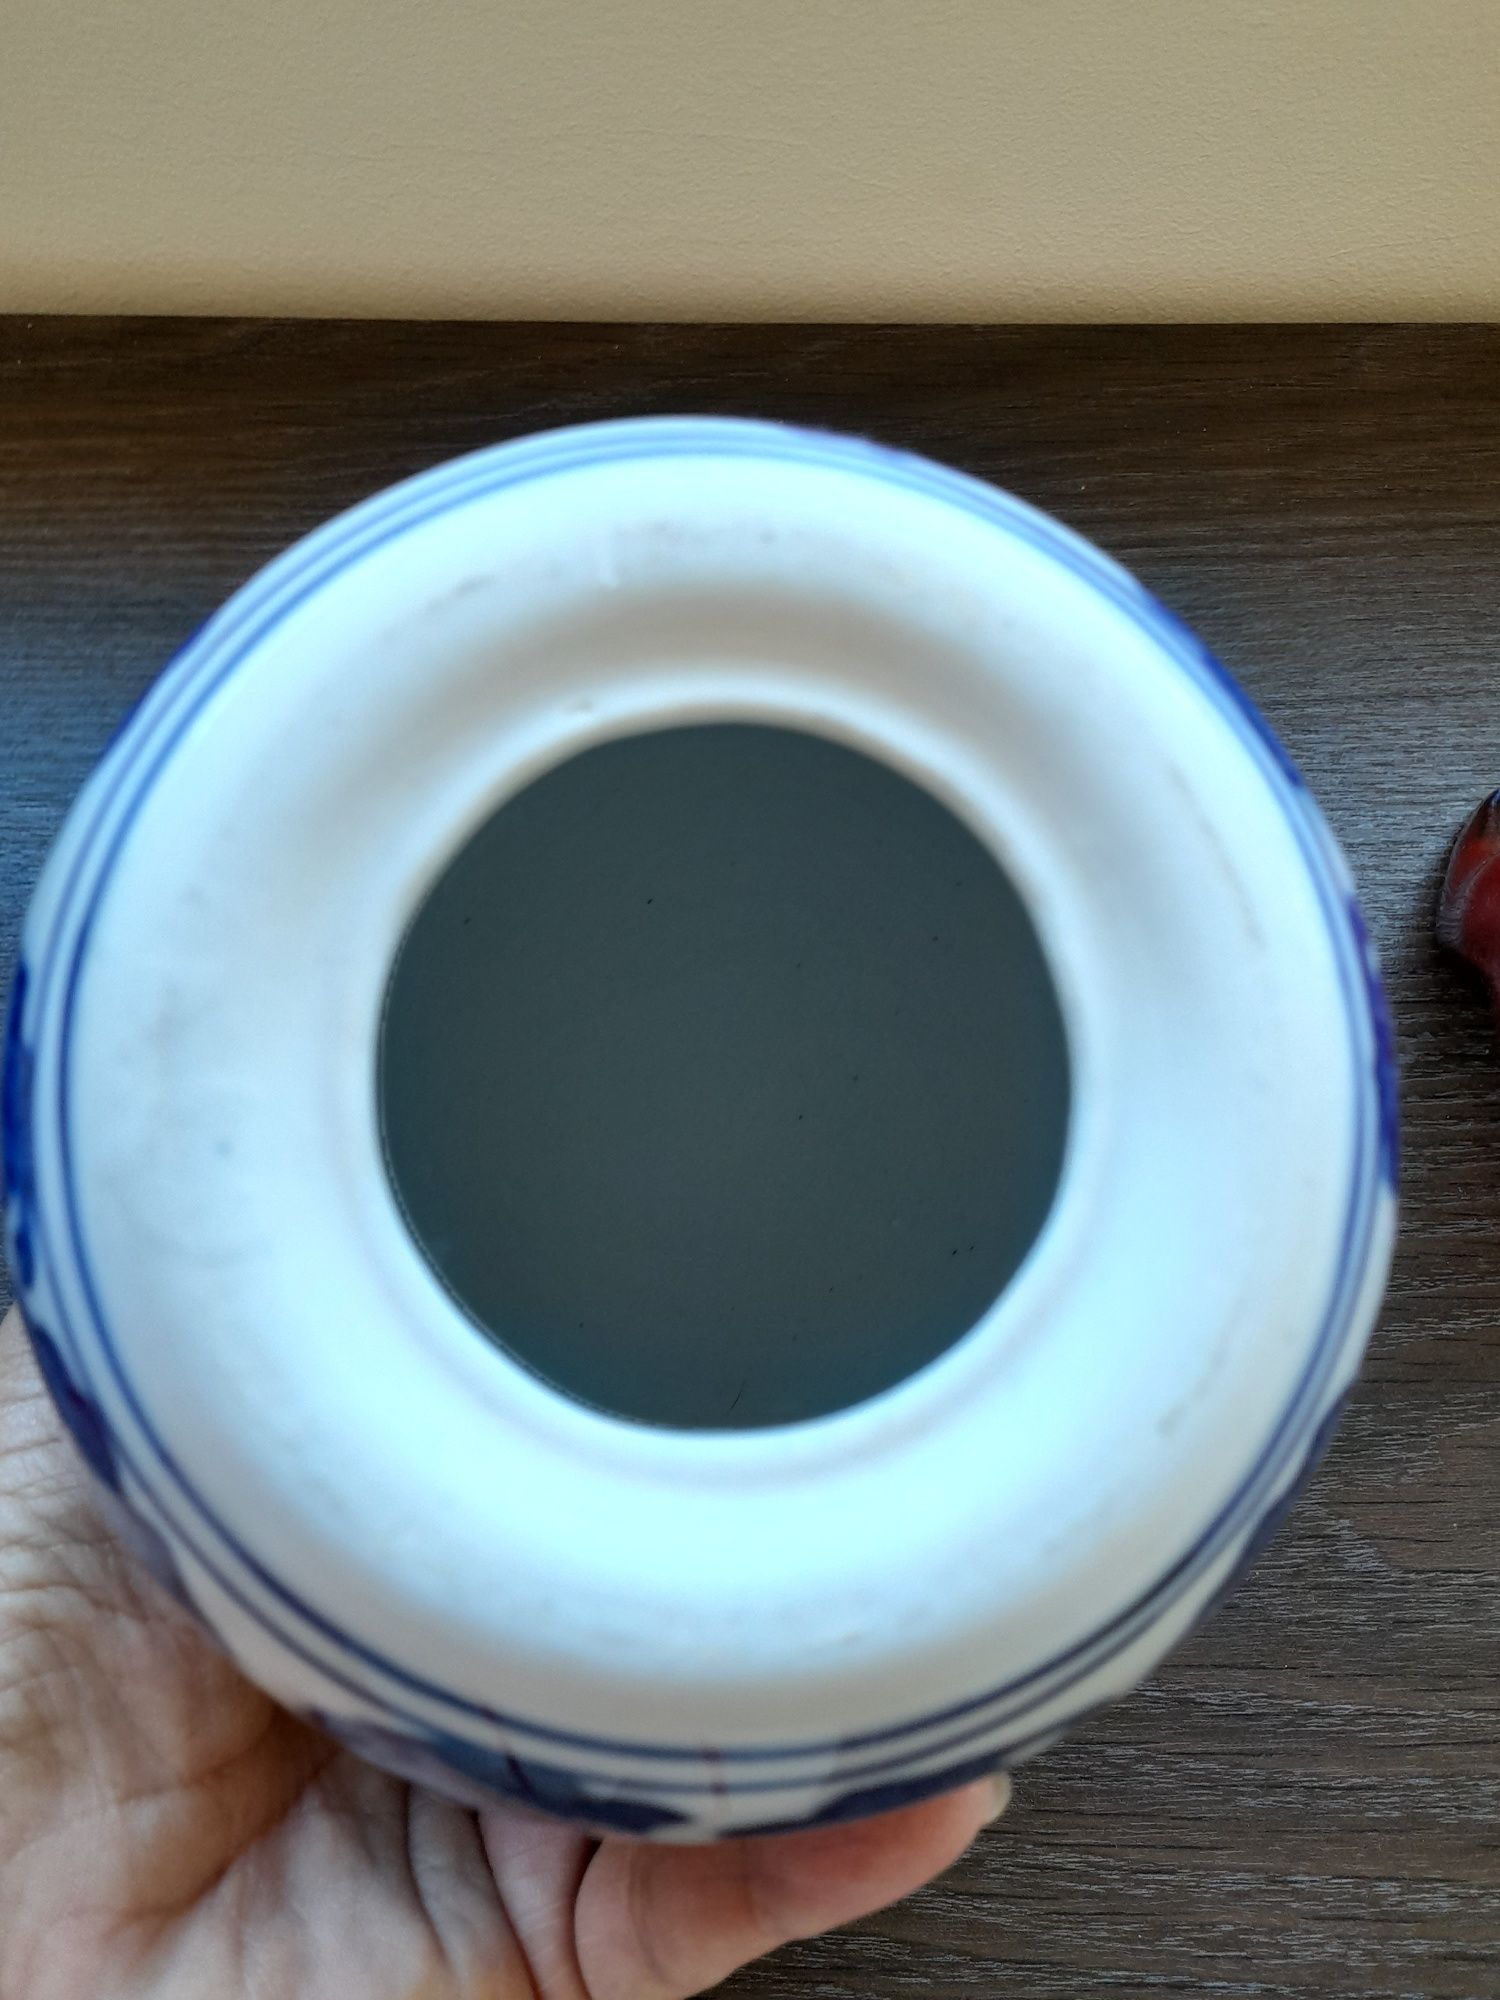 Ovo decorativo em porcelana, azul e branco